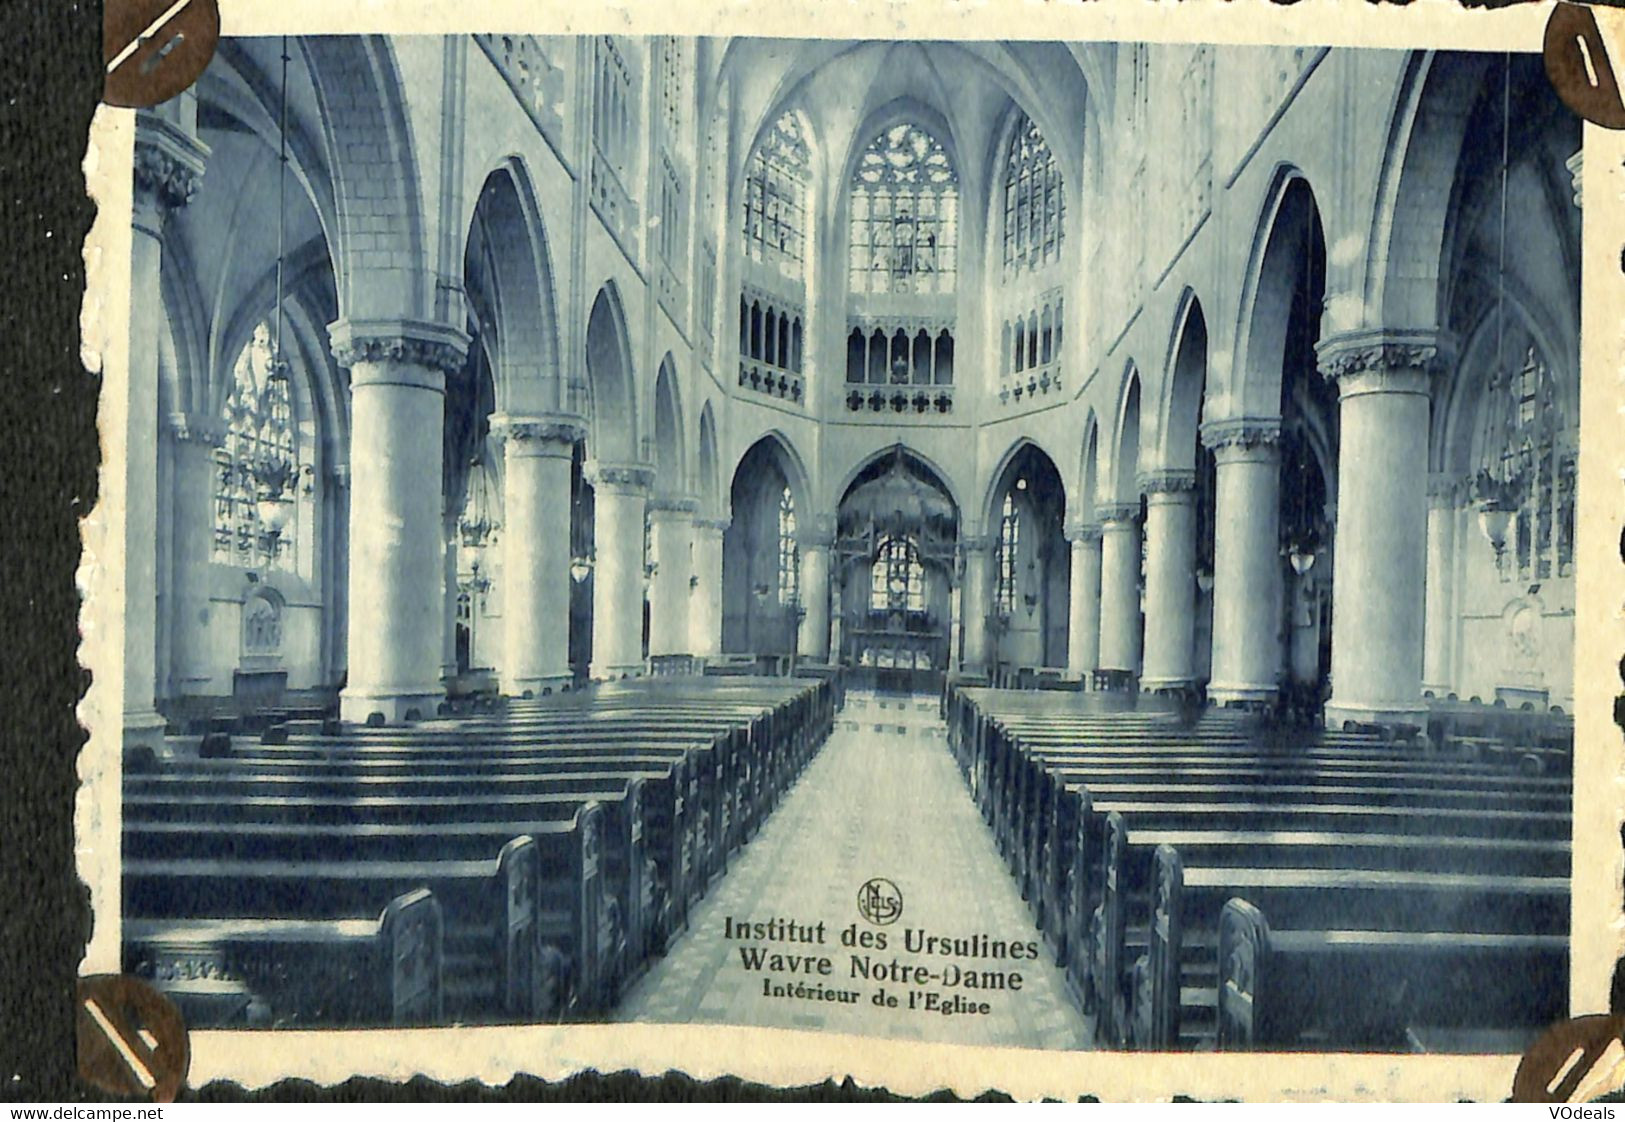 038 258 - CPA - Belgique - Institut Des Ursulines - Wavre Notre-Dame - Intérieur De L'Eglise - Sint-Katelijne-Waver